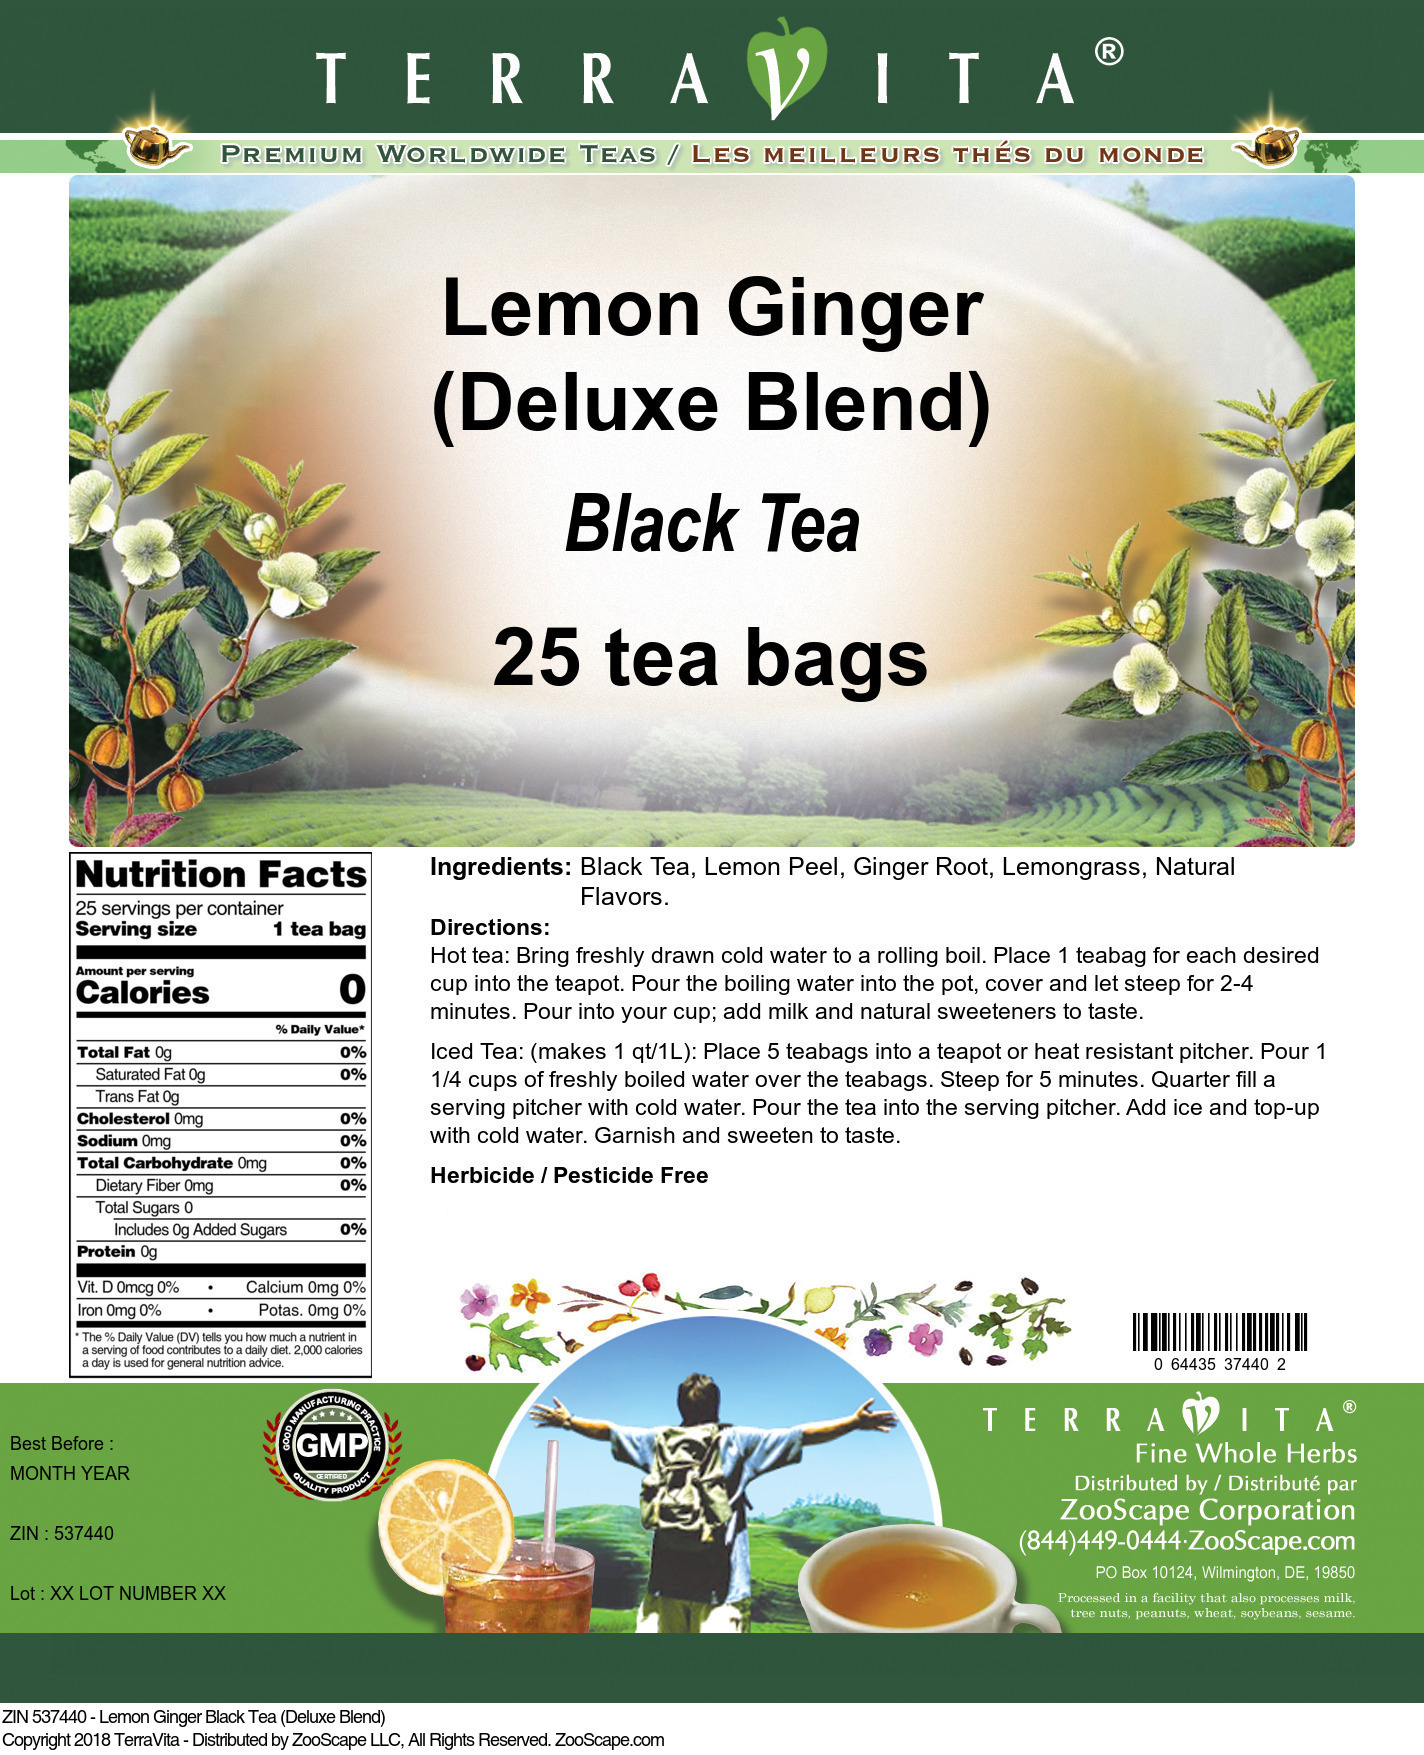 Lemon Ginger Black Tea (Deluxe Blend) - Label